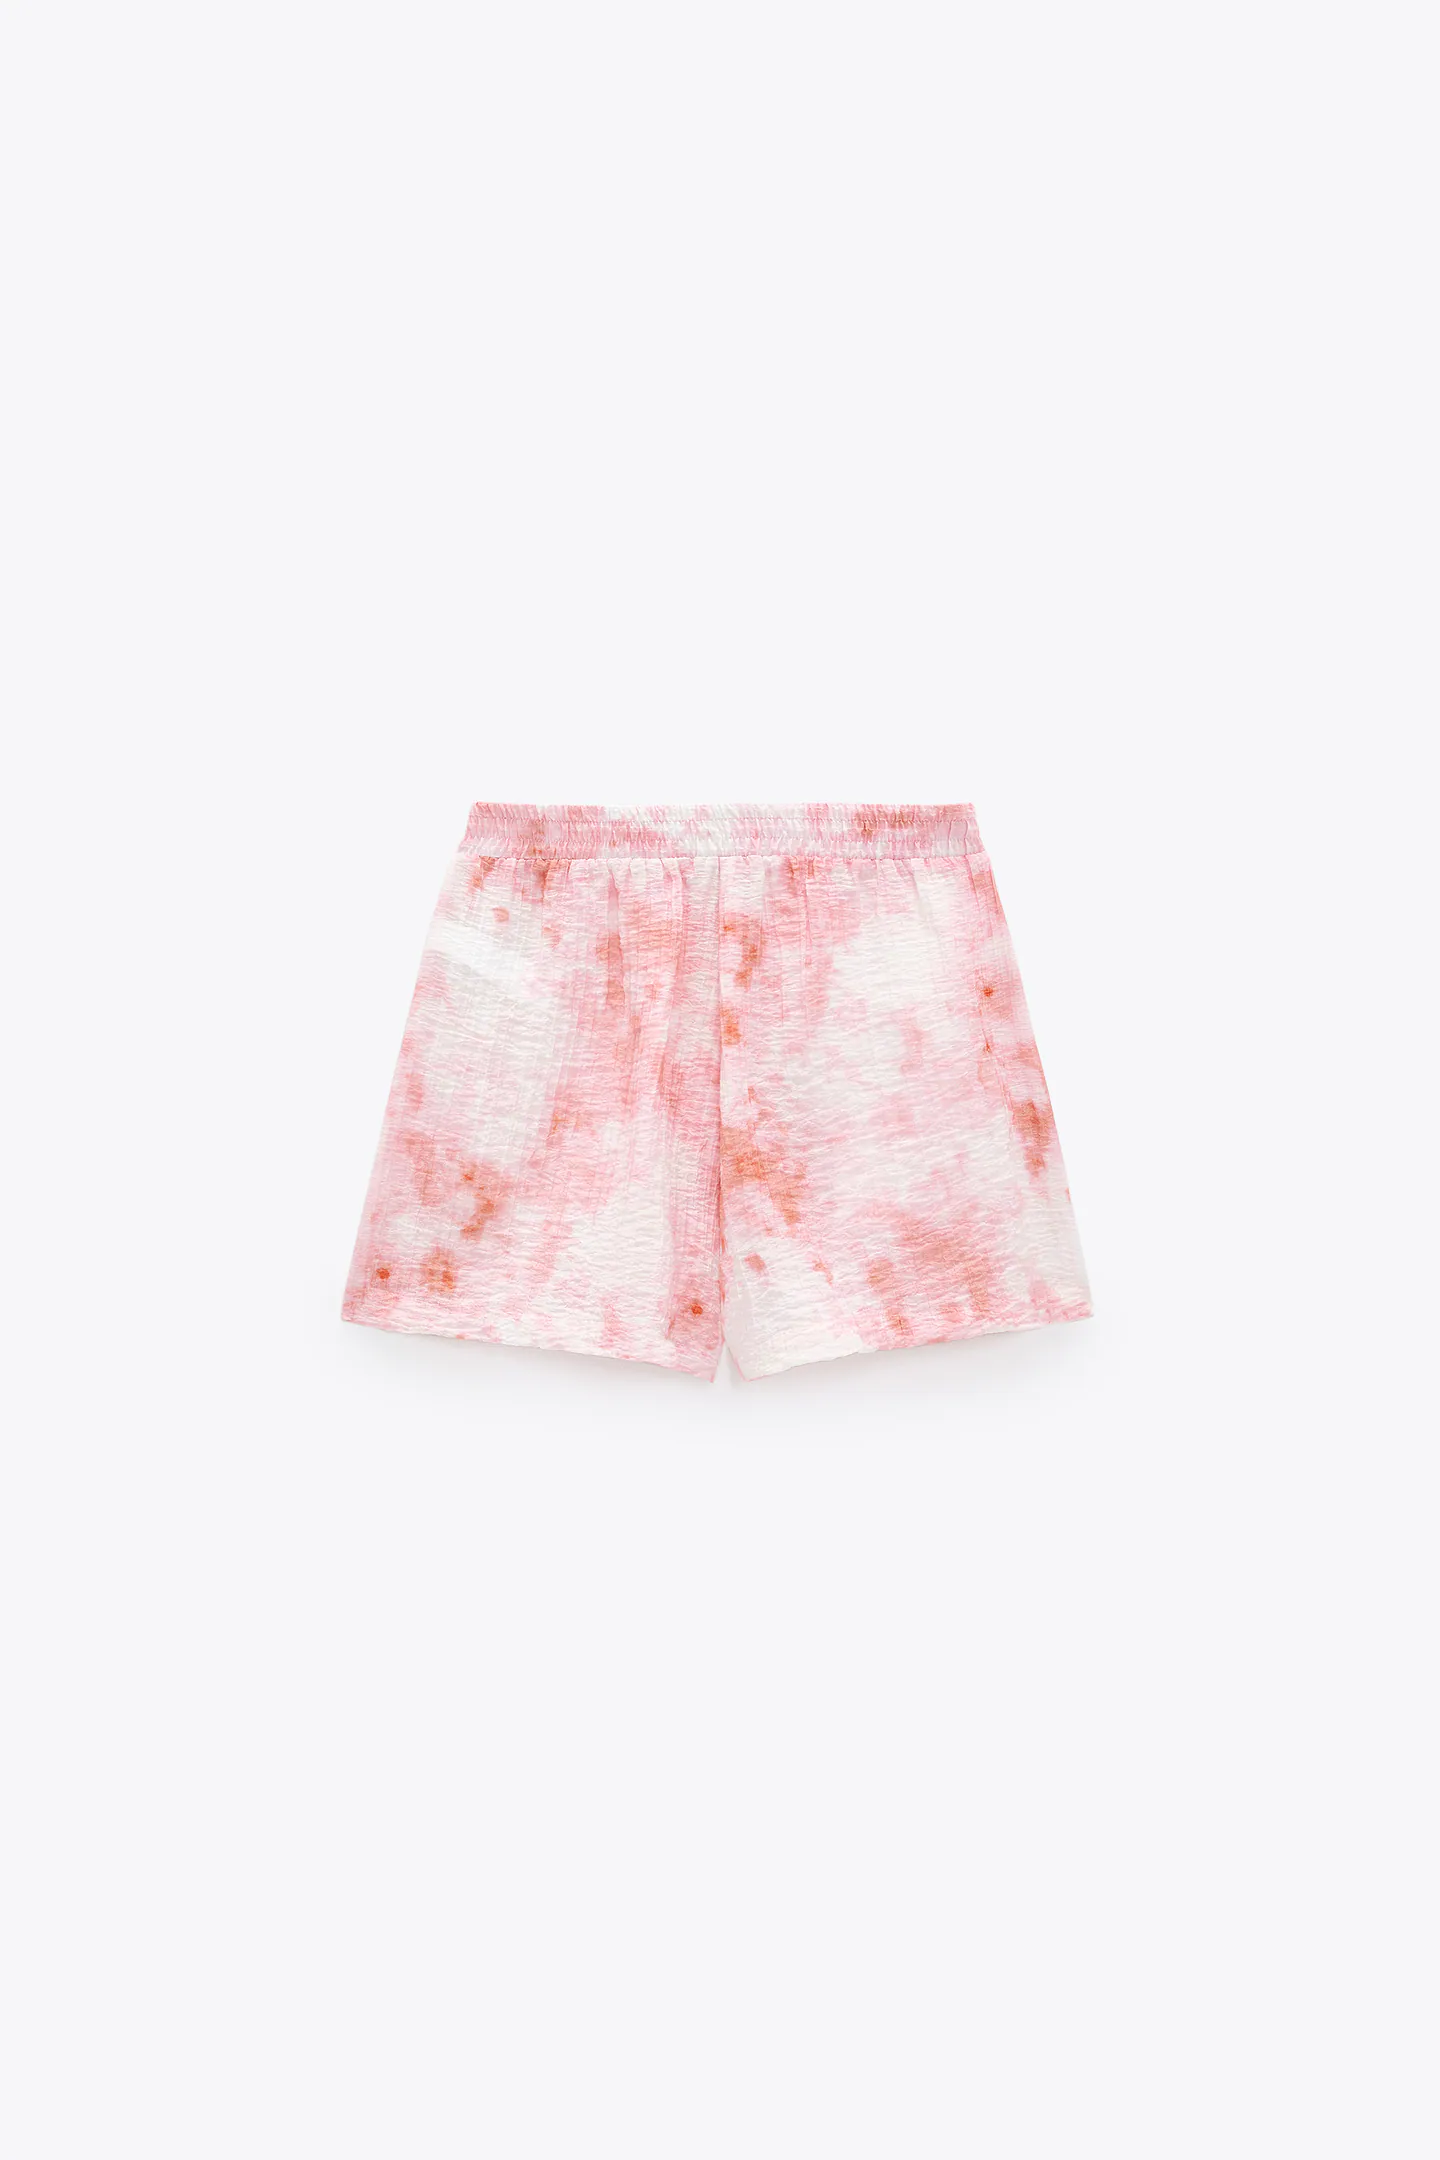 coral tie dye print shorts